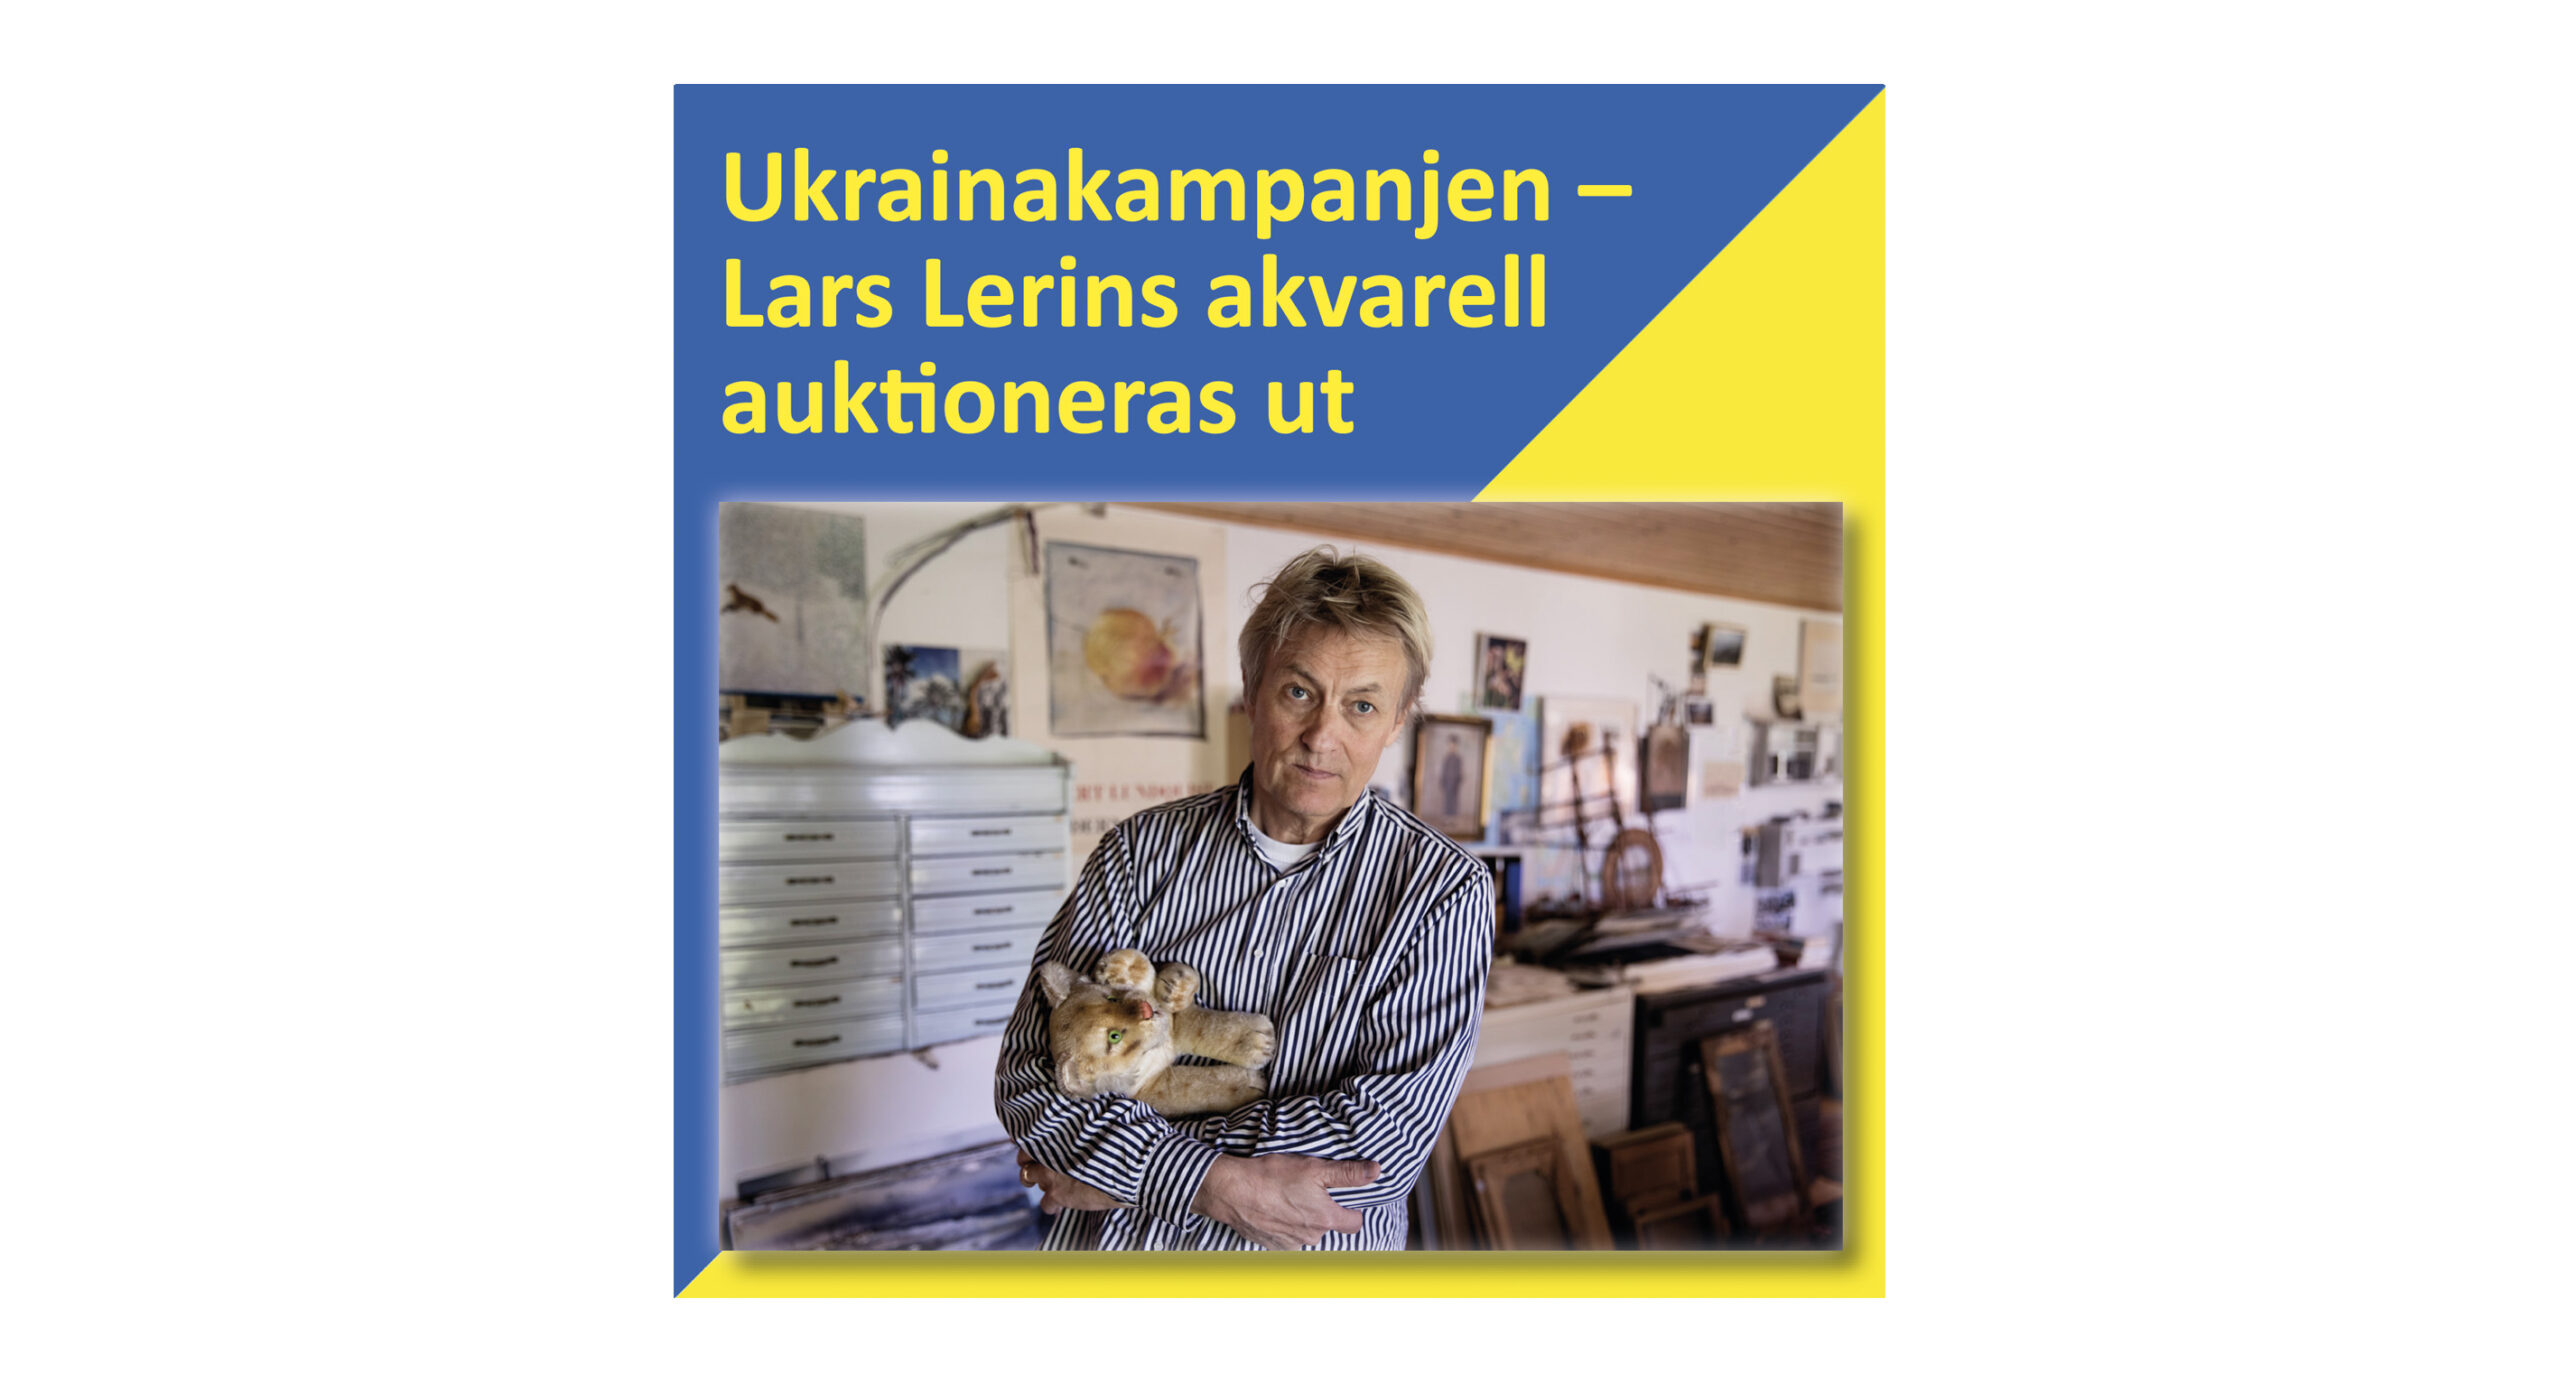 Lars Lerins akvarell auktioneras ut till förmån för Ukraina